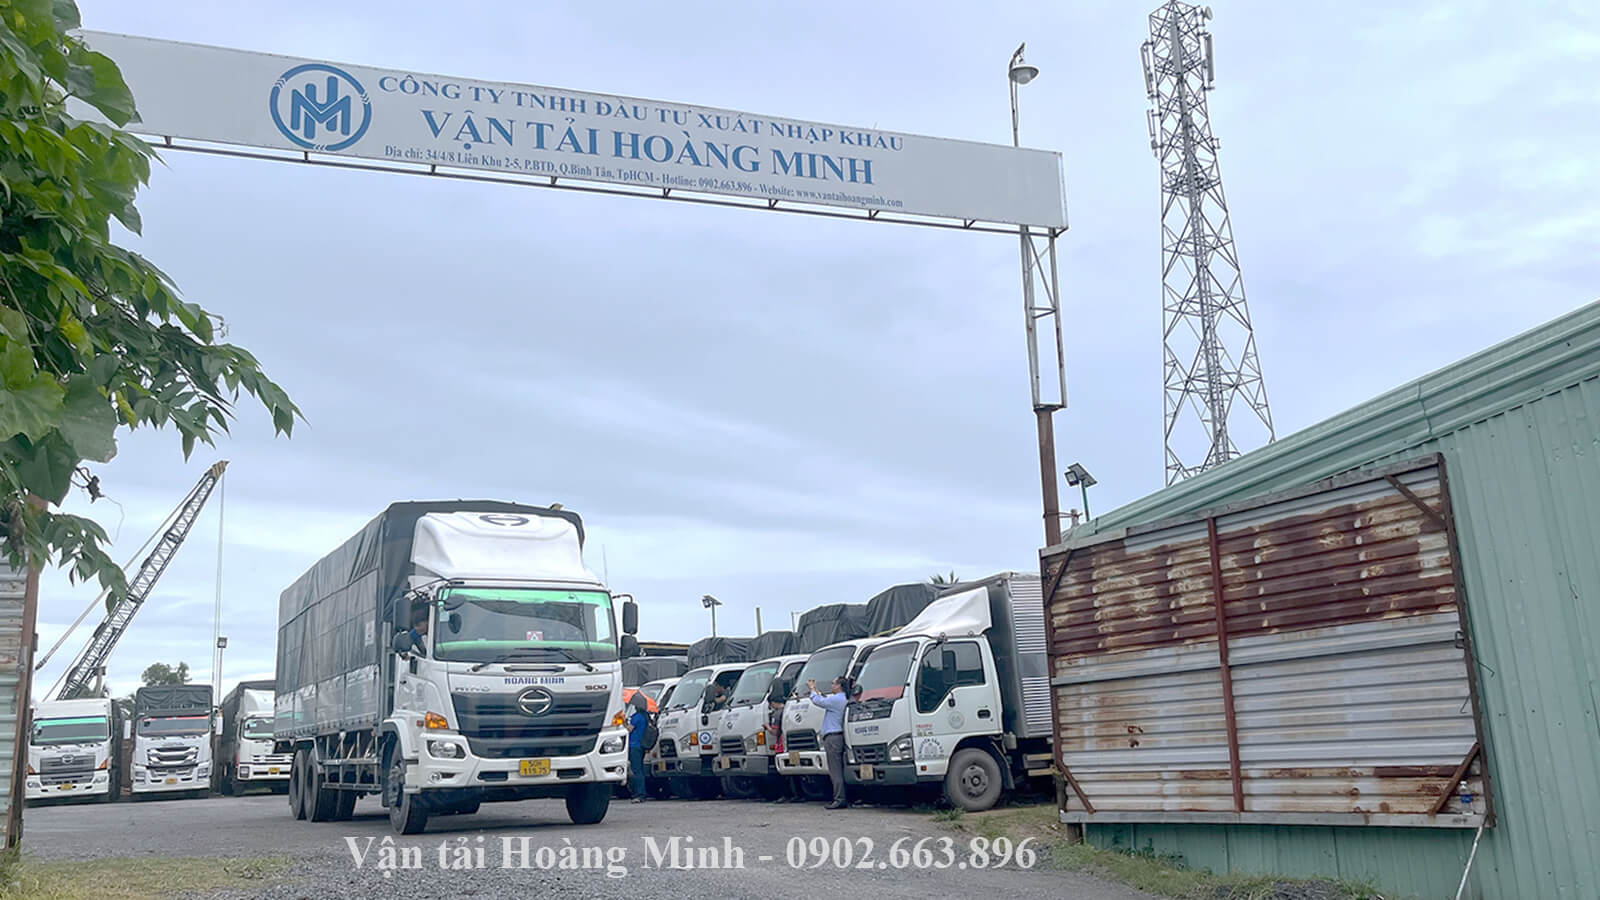 Cho thuê xe tải Thủ Thừa tại Hoàng Minh giá rẻ.jpg